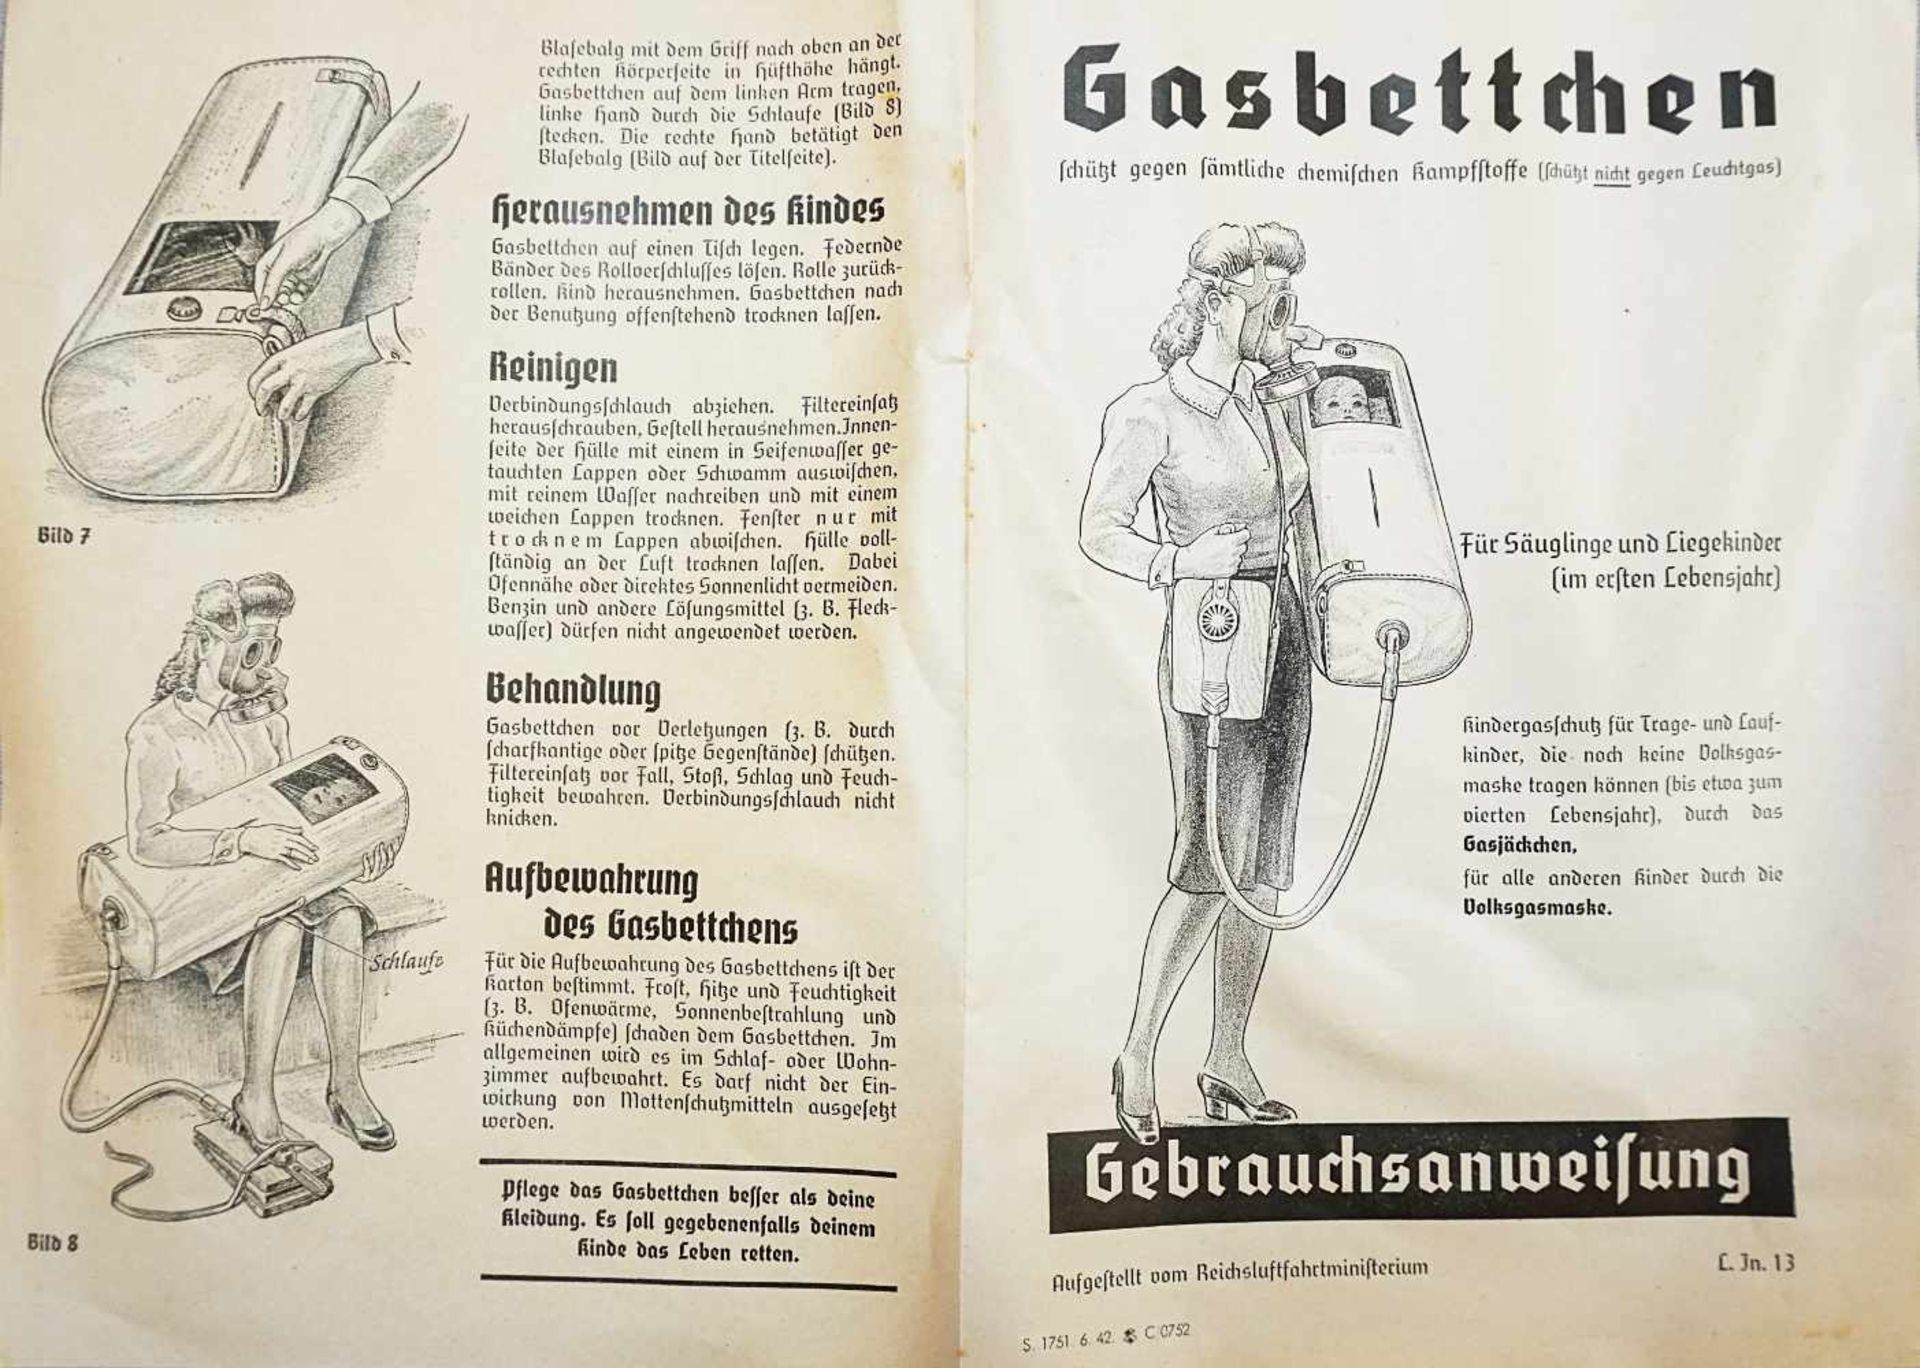 2 Objekte zum Kindergasschutz gegen sämtliche chemische Kampfstoffe 3. Reich:Gasbettchen für - Image 3 of 6